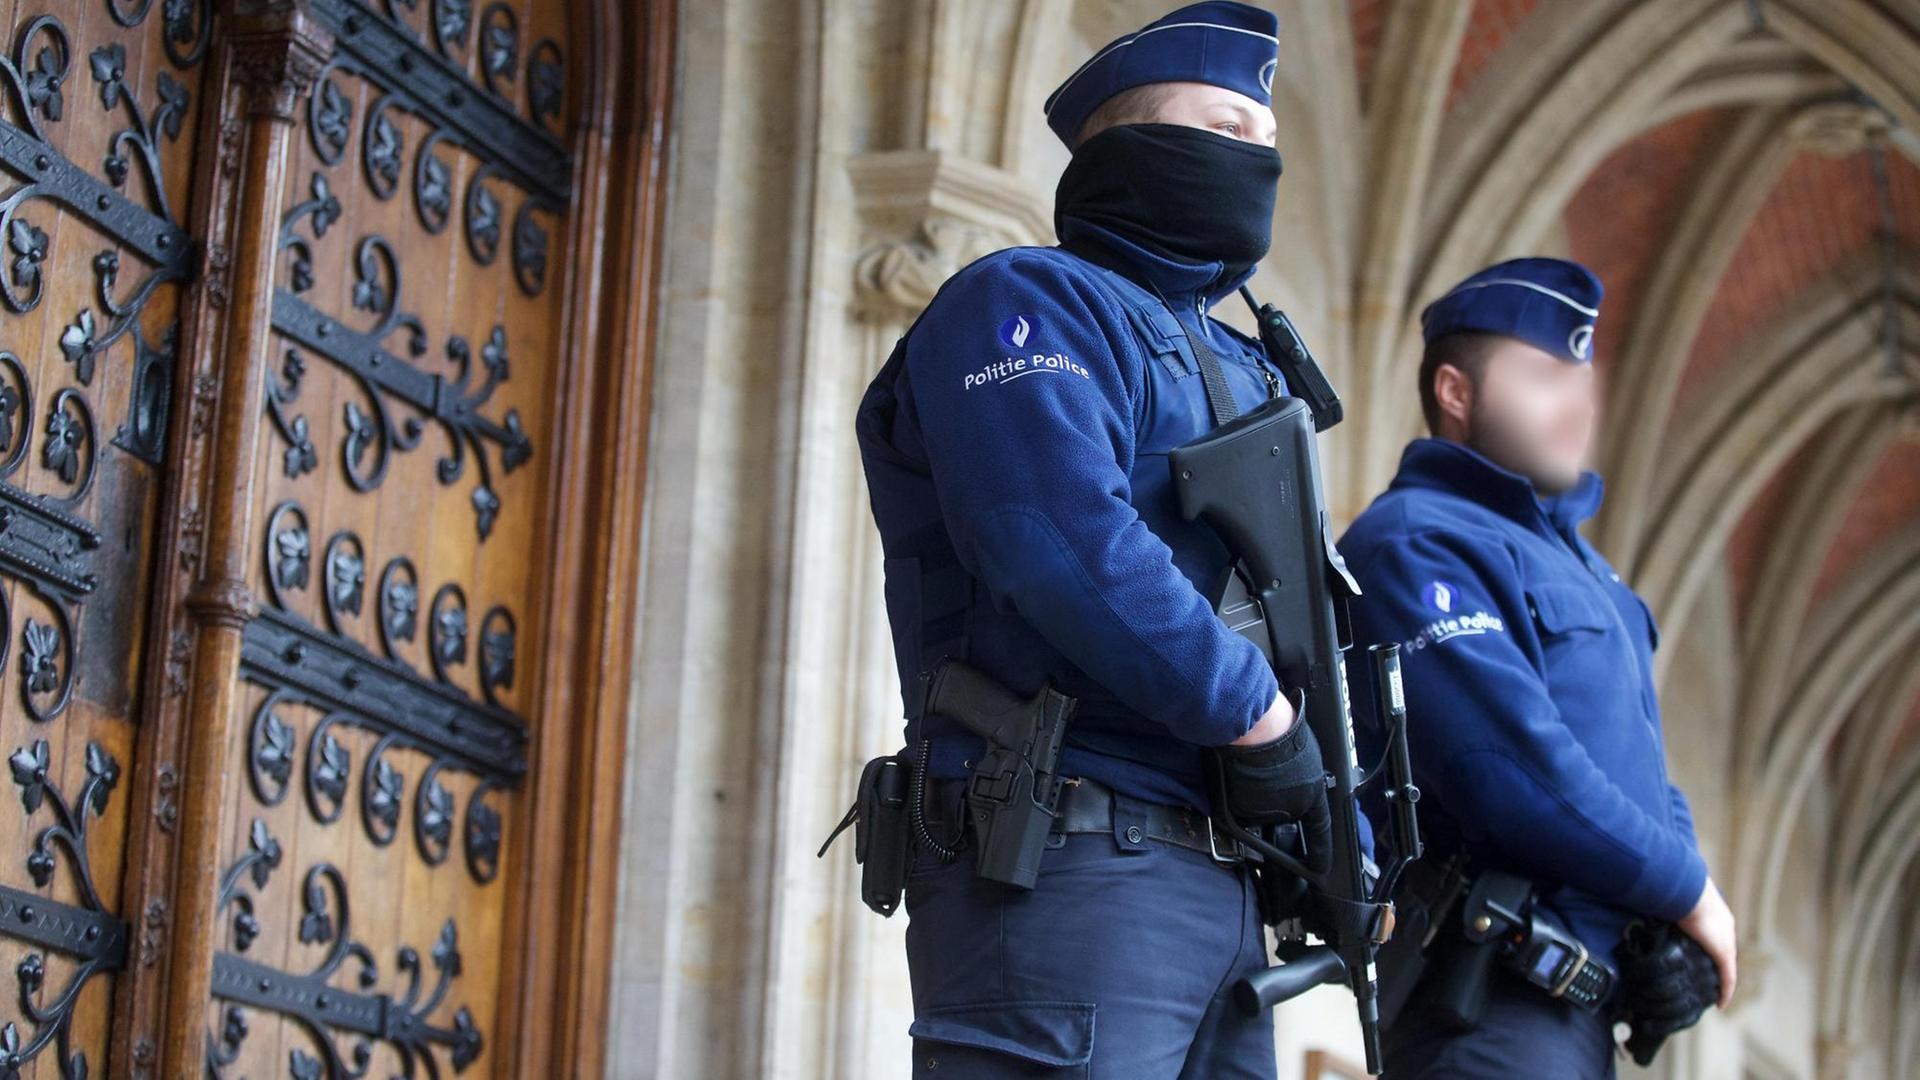 Man sieht zwei Polizisten in blauer Uniform, einer von beiden trägt ein Maschinengewehr.